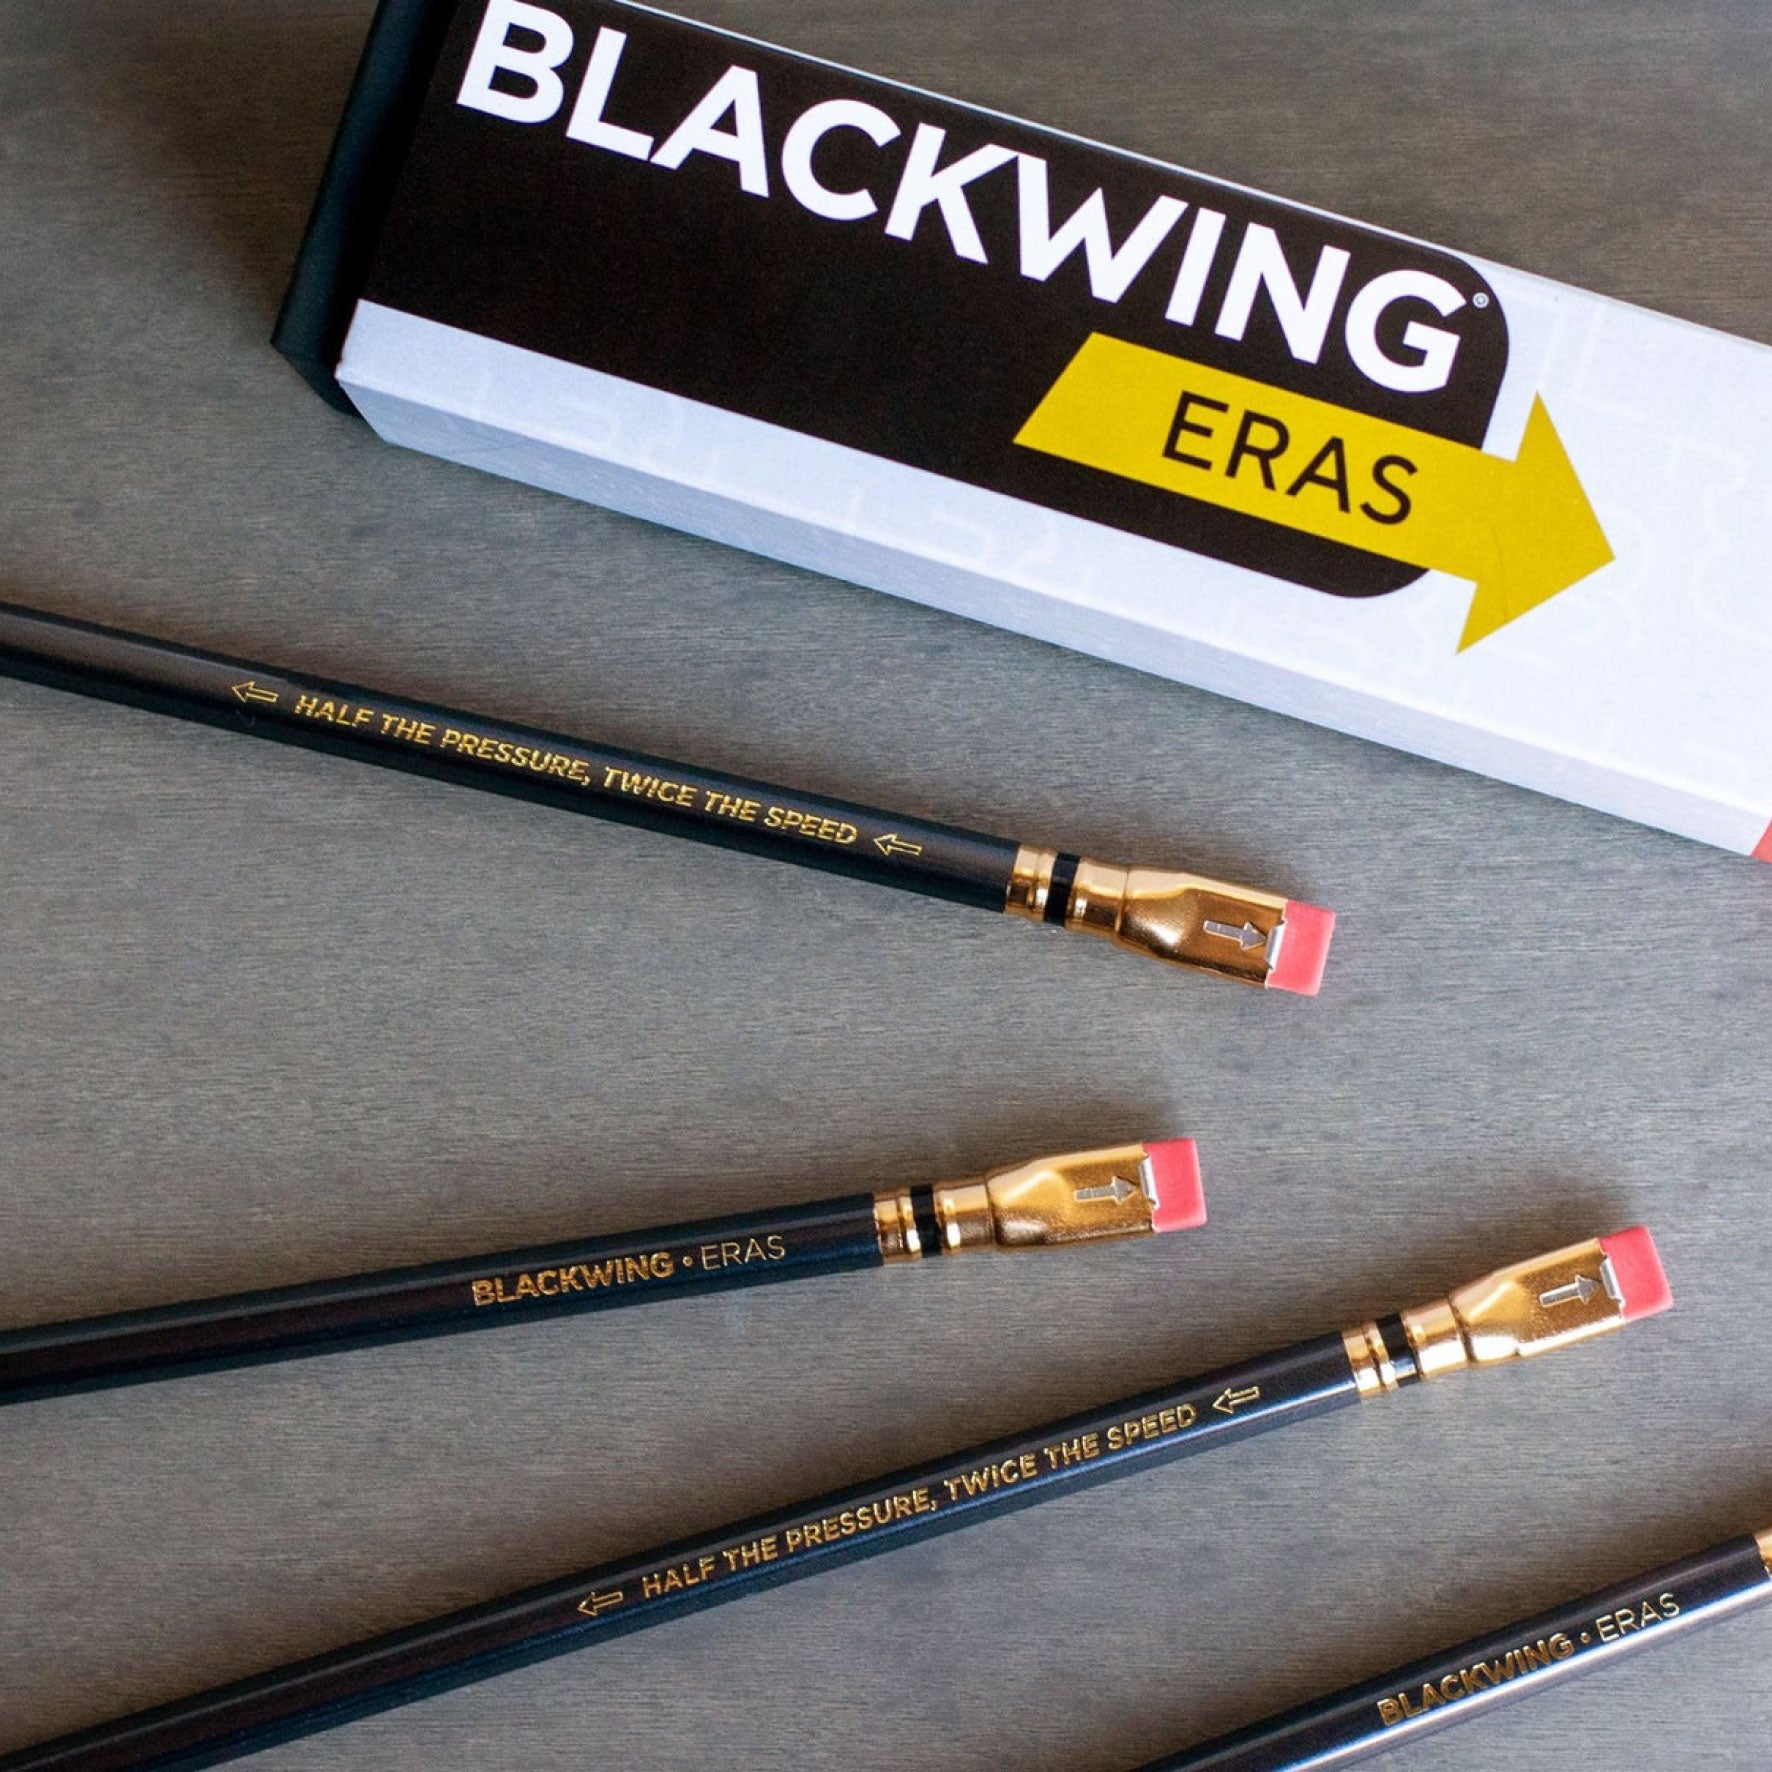 Blackwing Eras 2022 Packaging